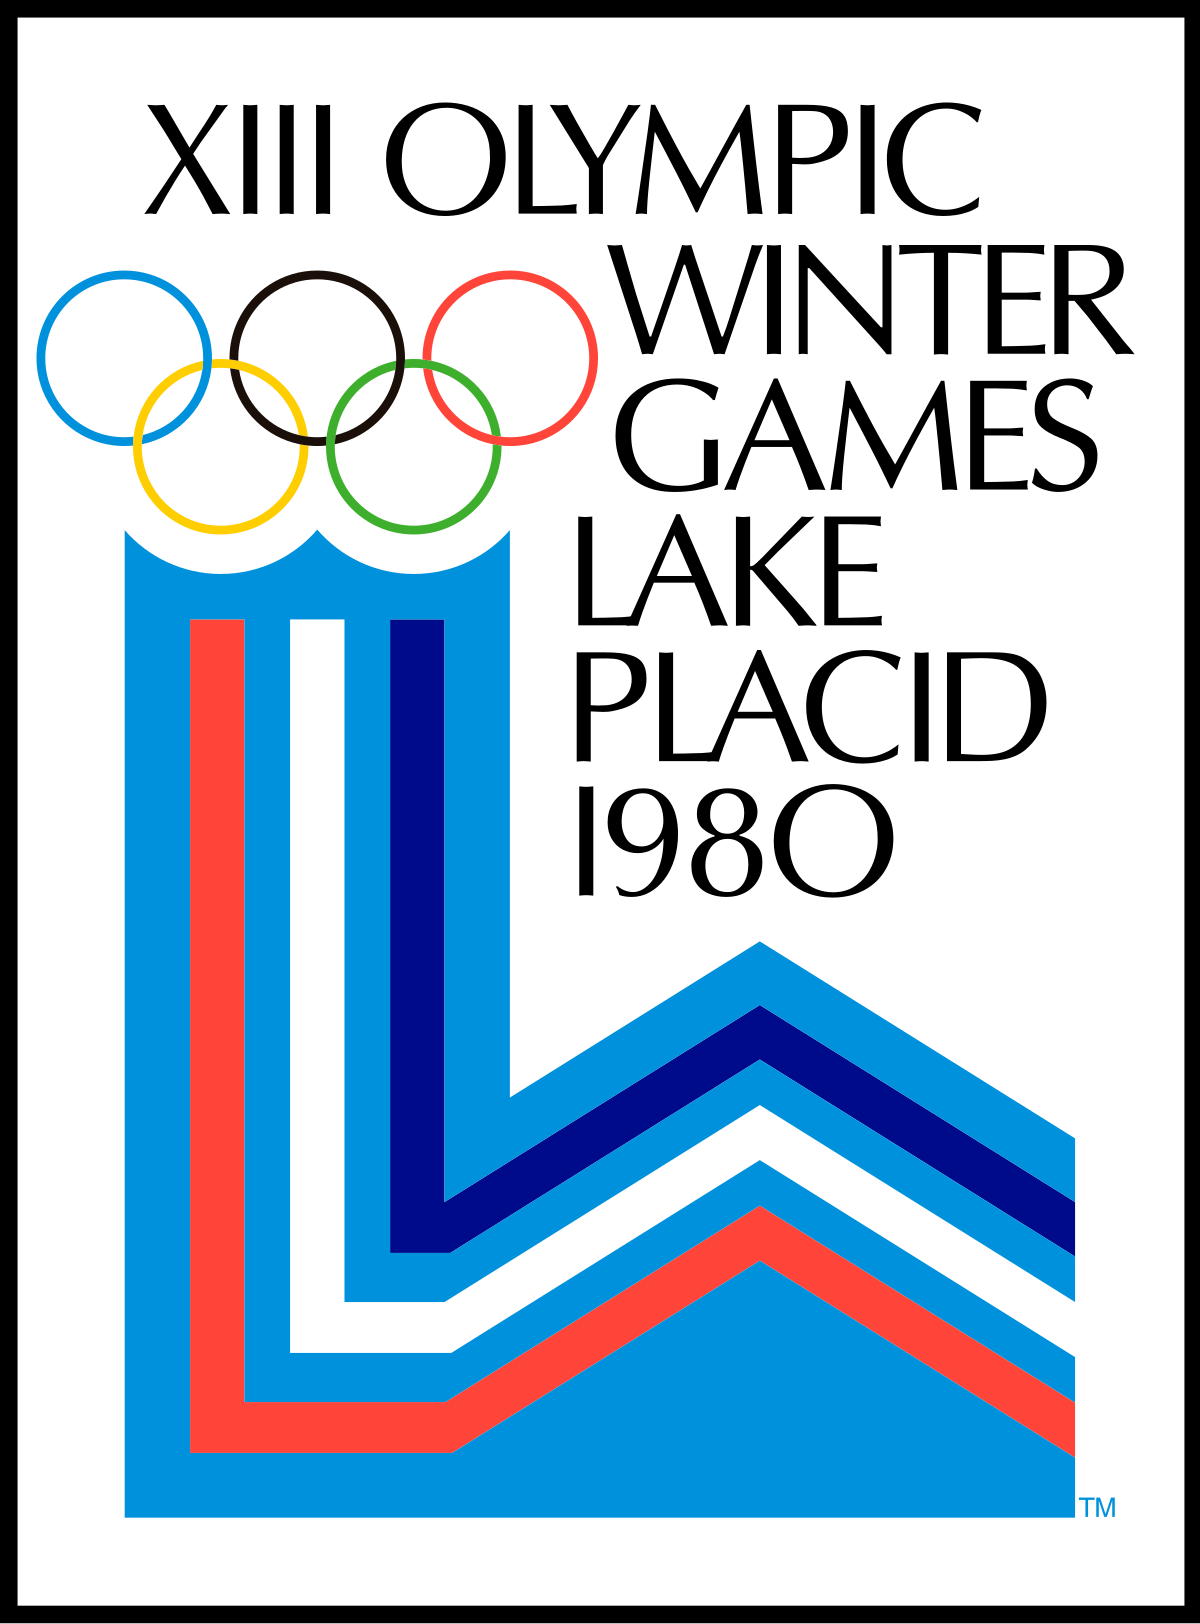 北京奥运图标2022图片